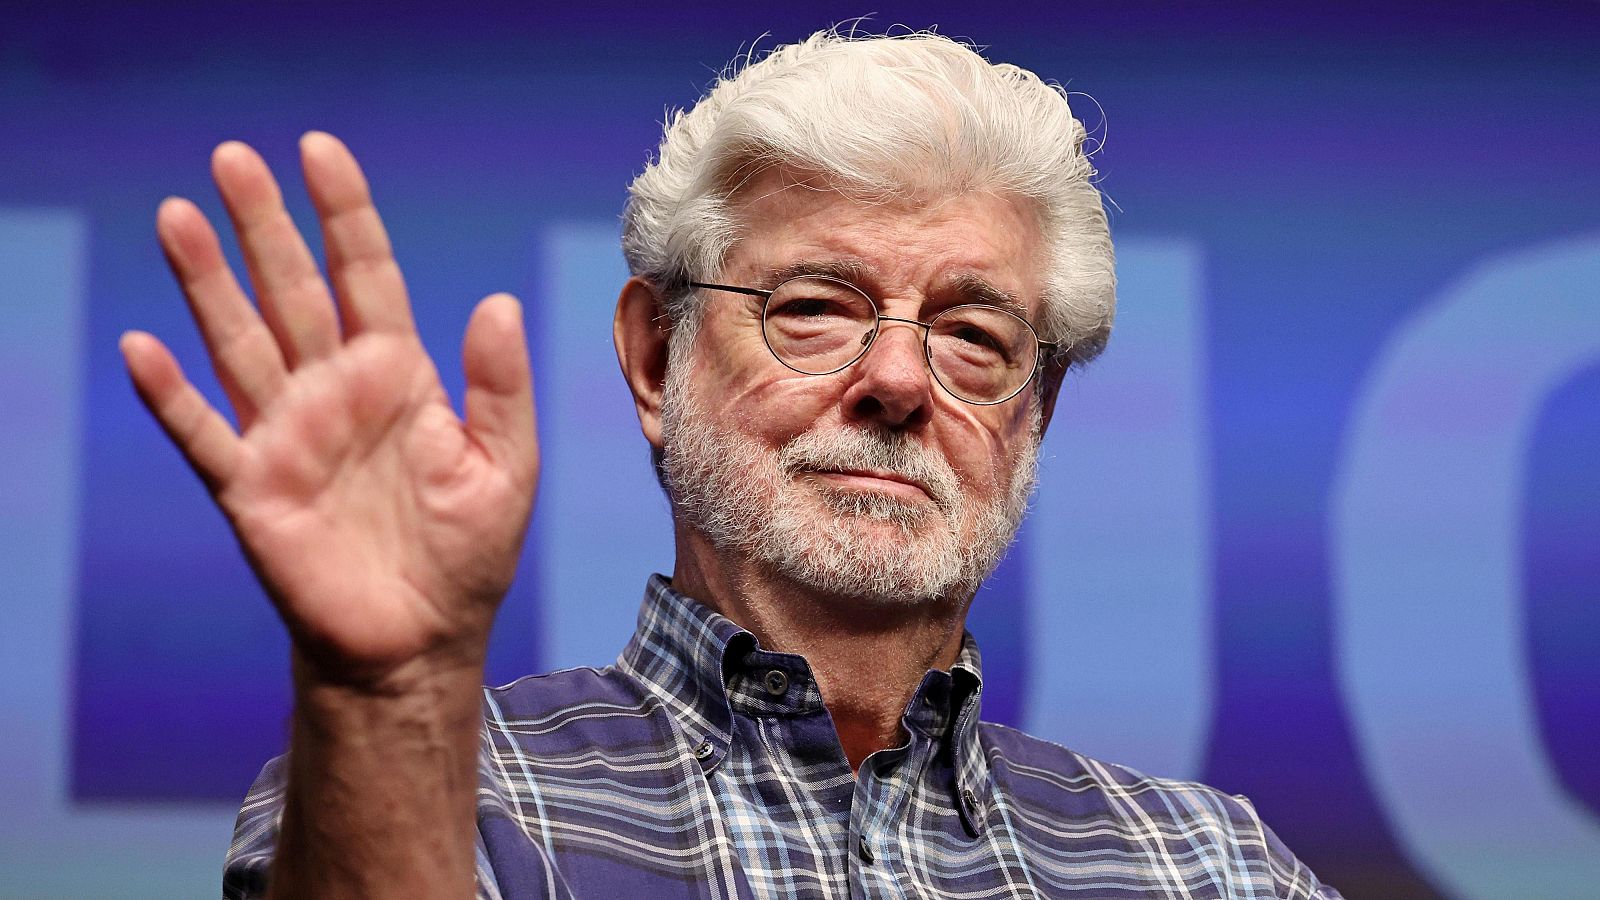 George Lucas, historia viva del cine, en Cannes: "El cine del futuro será como una ópera o ballet"